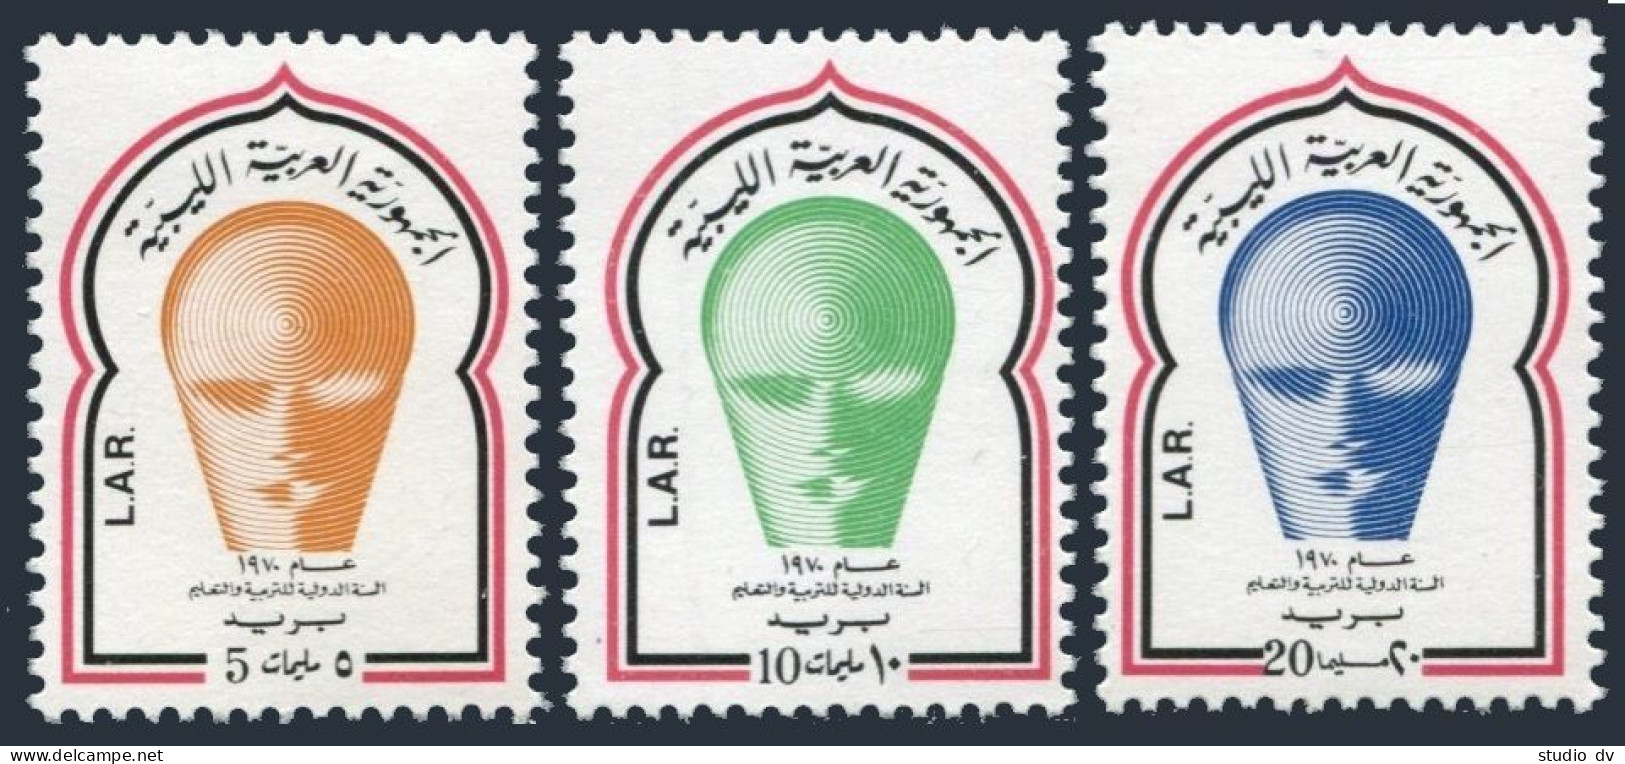 Libya 401-403,MNH.Michel 319-321. Educational Year IEY-1971. - Libyen